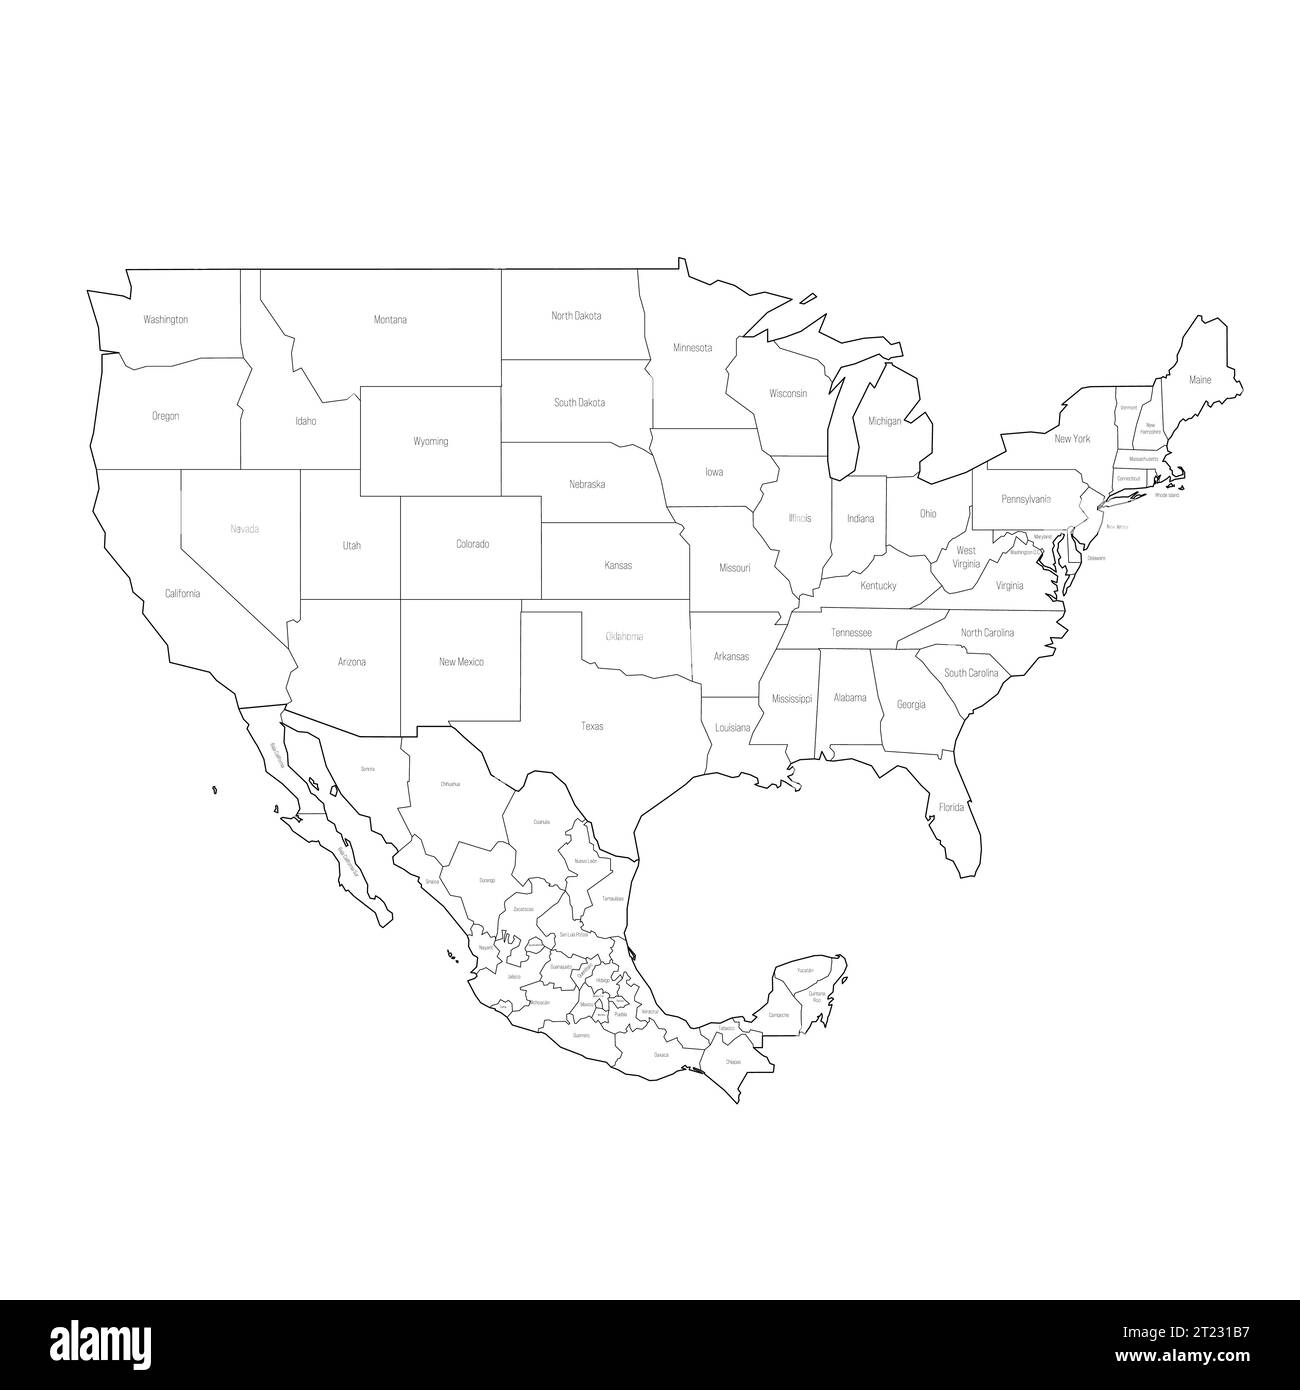 Mappa politica delle divisioni amministrative degli Stati Uniti e del Messico. Mappa vettoriale contorno nero con etichette. Illustrazione Vettoriale